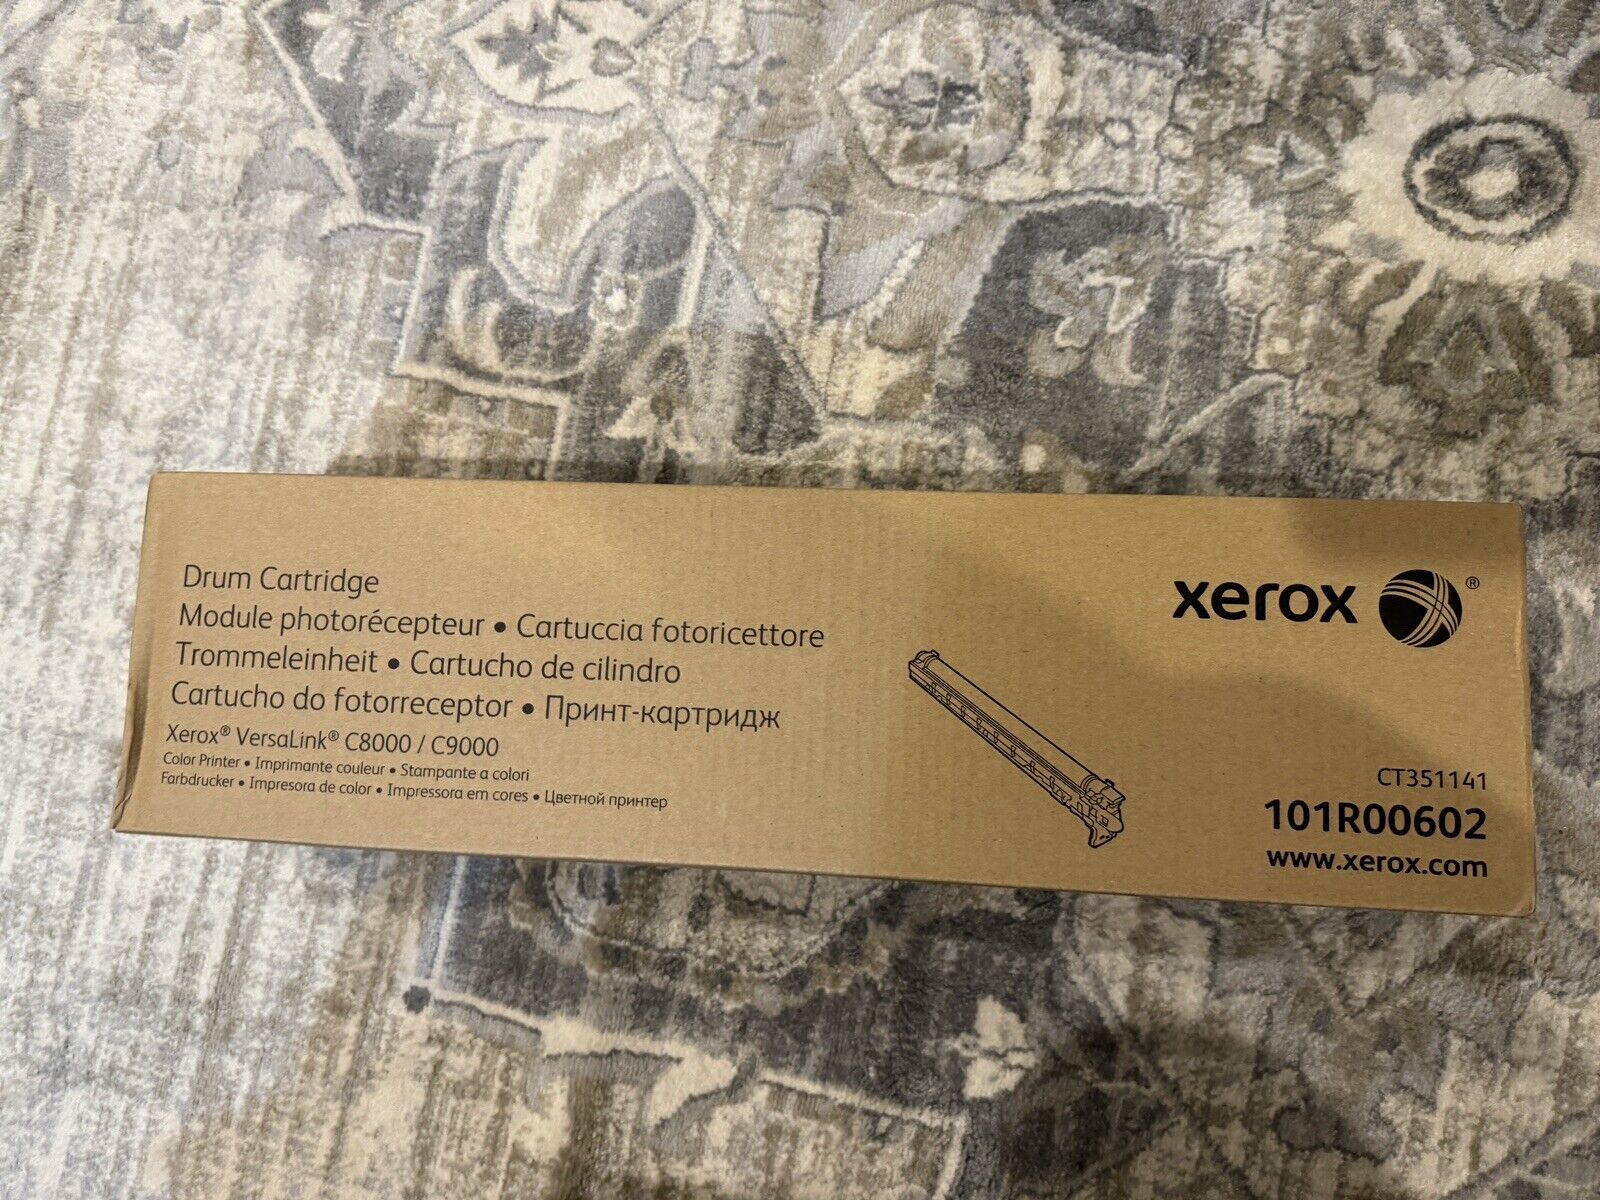 Xerox VersaLink C8000/C9000 Drum Cartridge (101R00602)